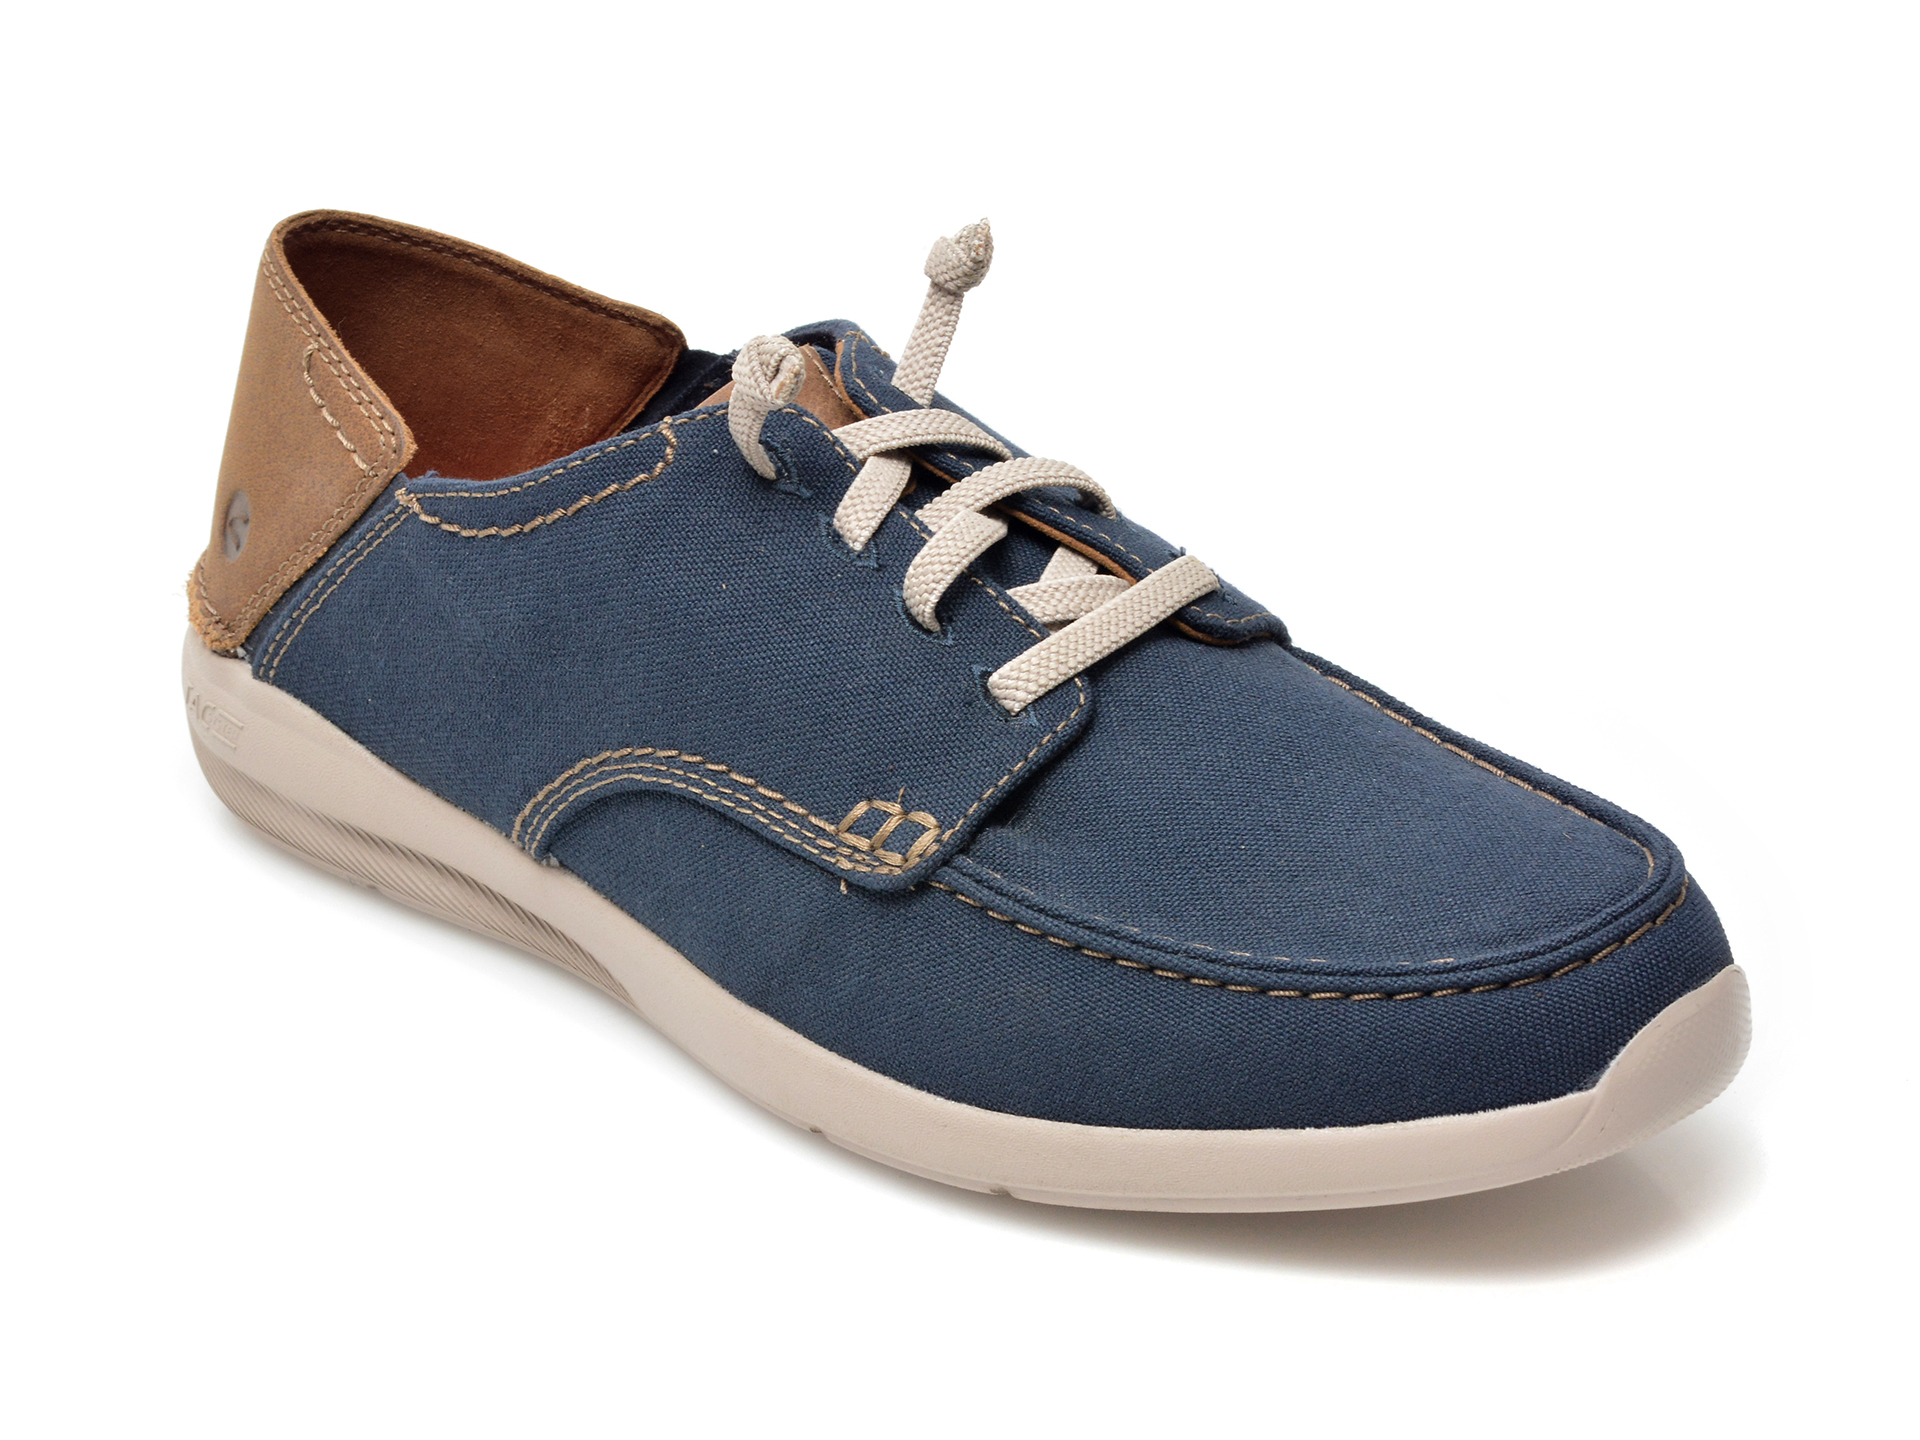 Pantofi CLARKS bleumarin, GORWIN LACE, din material textil Clarks